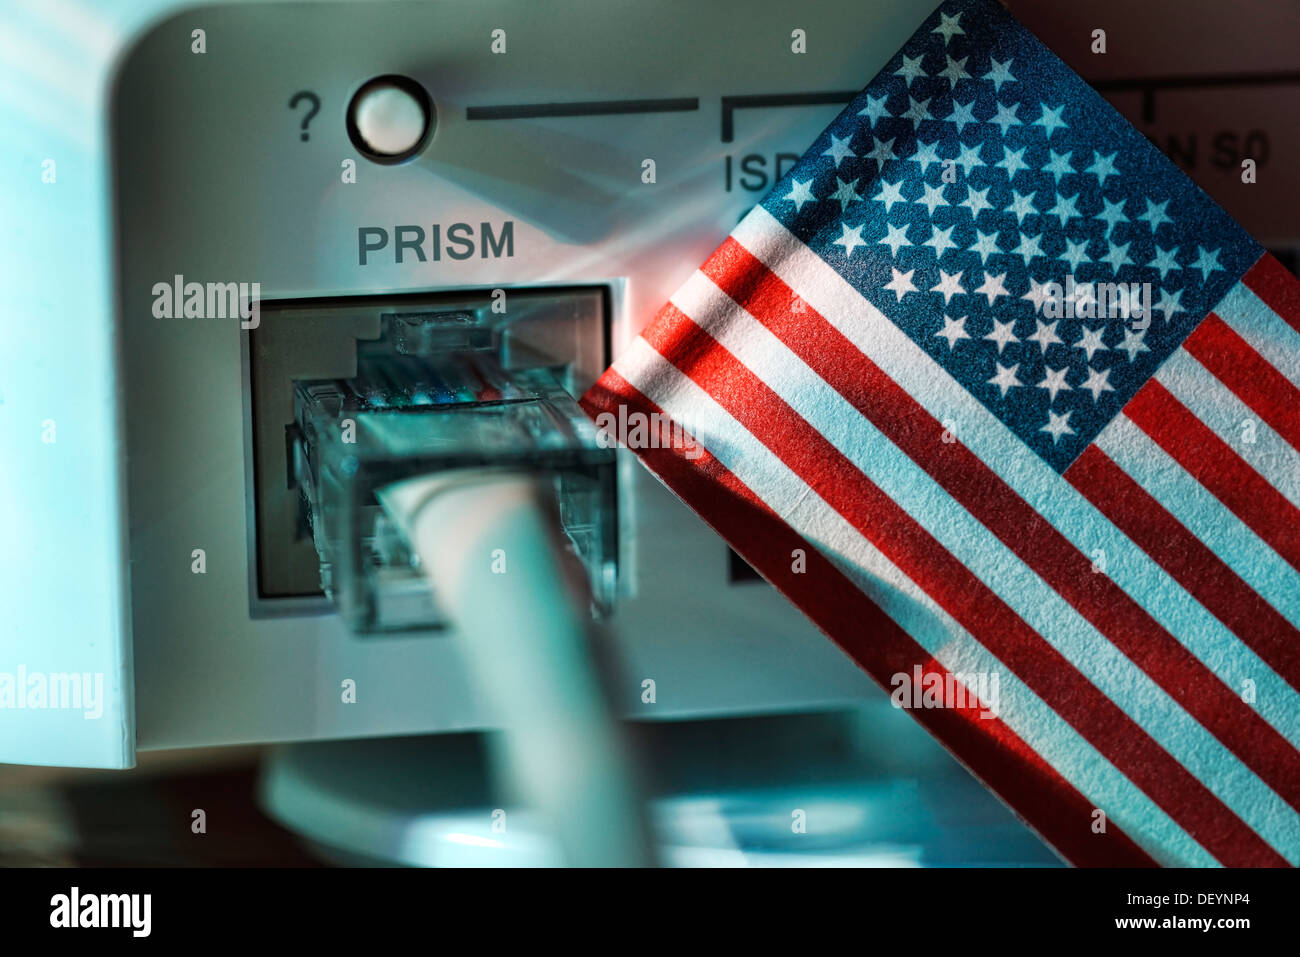 Internet-Kabel in ein Modem und eine USA Flagge, symbolische Foto hören Skandal Prisma, Internetkabel ein Einem Modem Und USA-Fahne, Symb Stockfoto